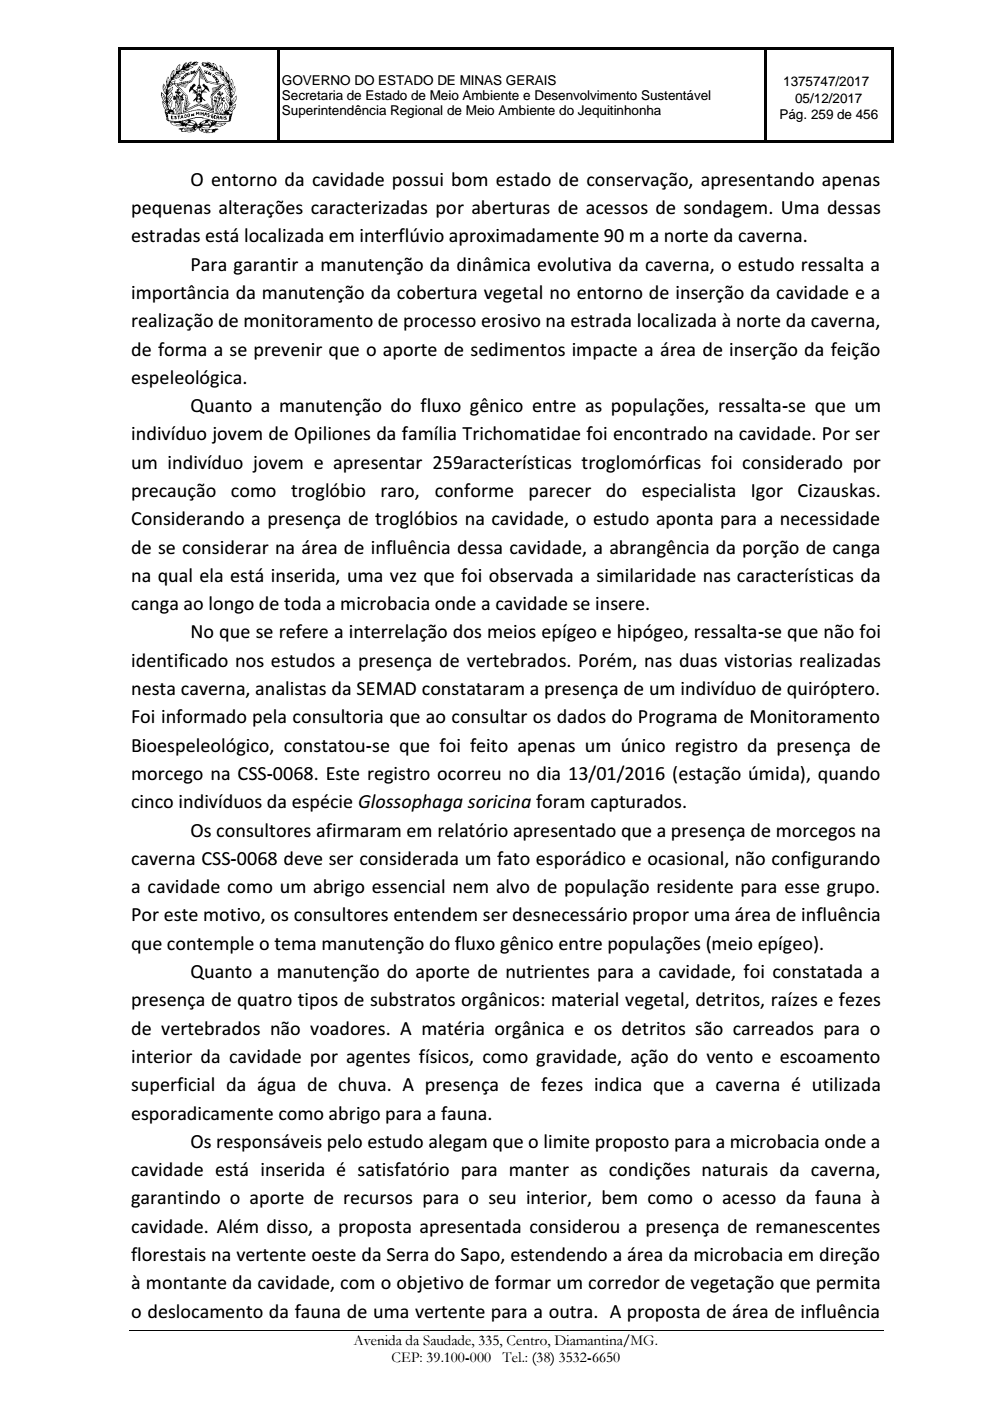 Page 259 from Parecer único da Secretaria de estado de Meio Ambiente e Desenvolvimento Sustentável (SEMAD)